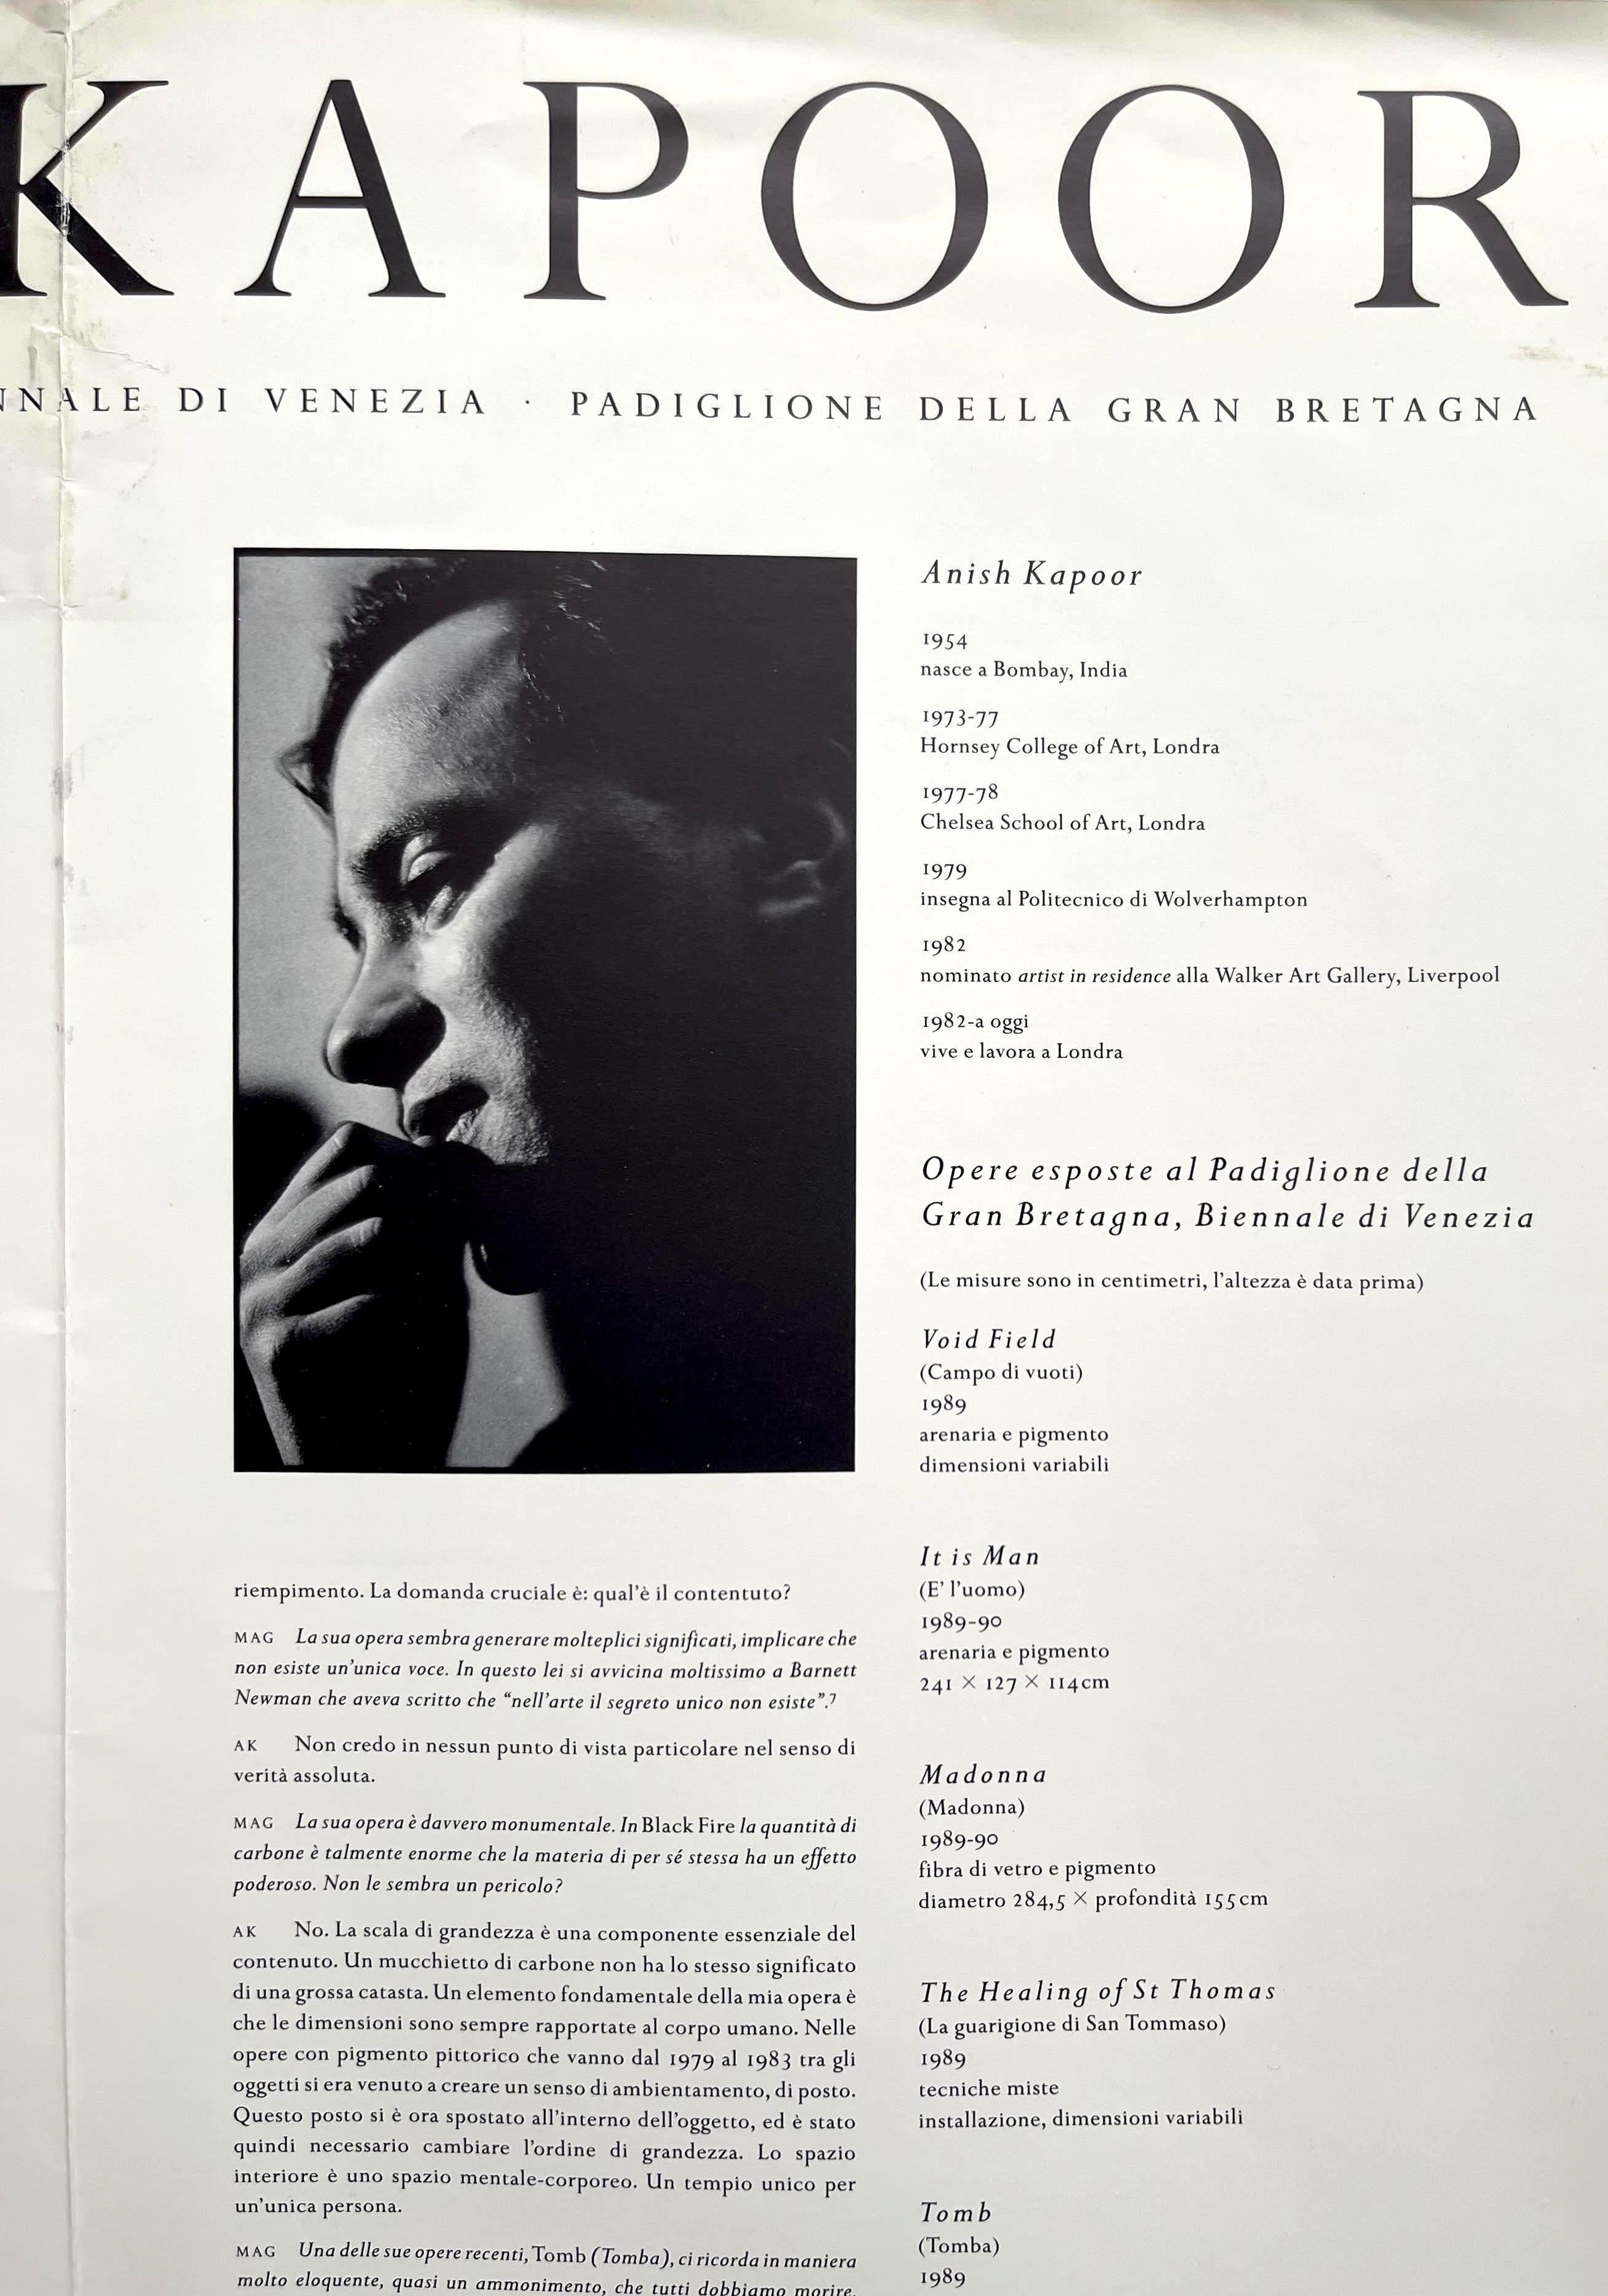 Anish Kapoor
Biennale de Venise : XLIV Esposizione Internazionale D'arte Biennale Di Venezia (signé et inscrit par Anish Kapoor), 1990
Affiche historique signée publiée à l'occasion de la représentation de la Grande-Bretagne par Kapoor à la Biennale